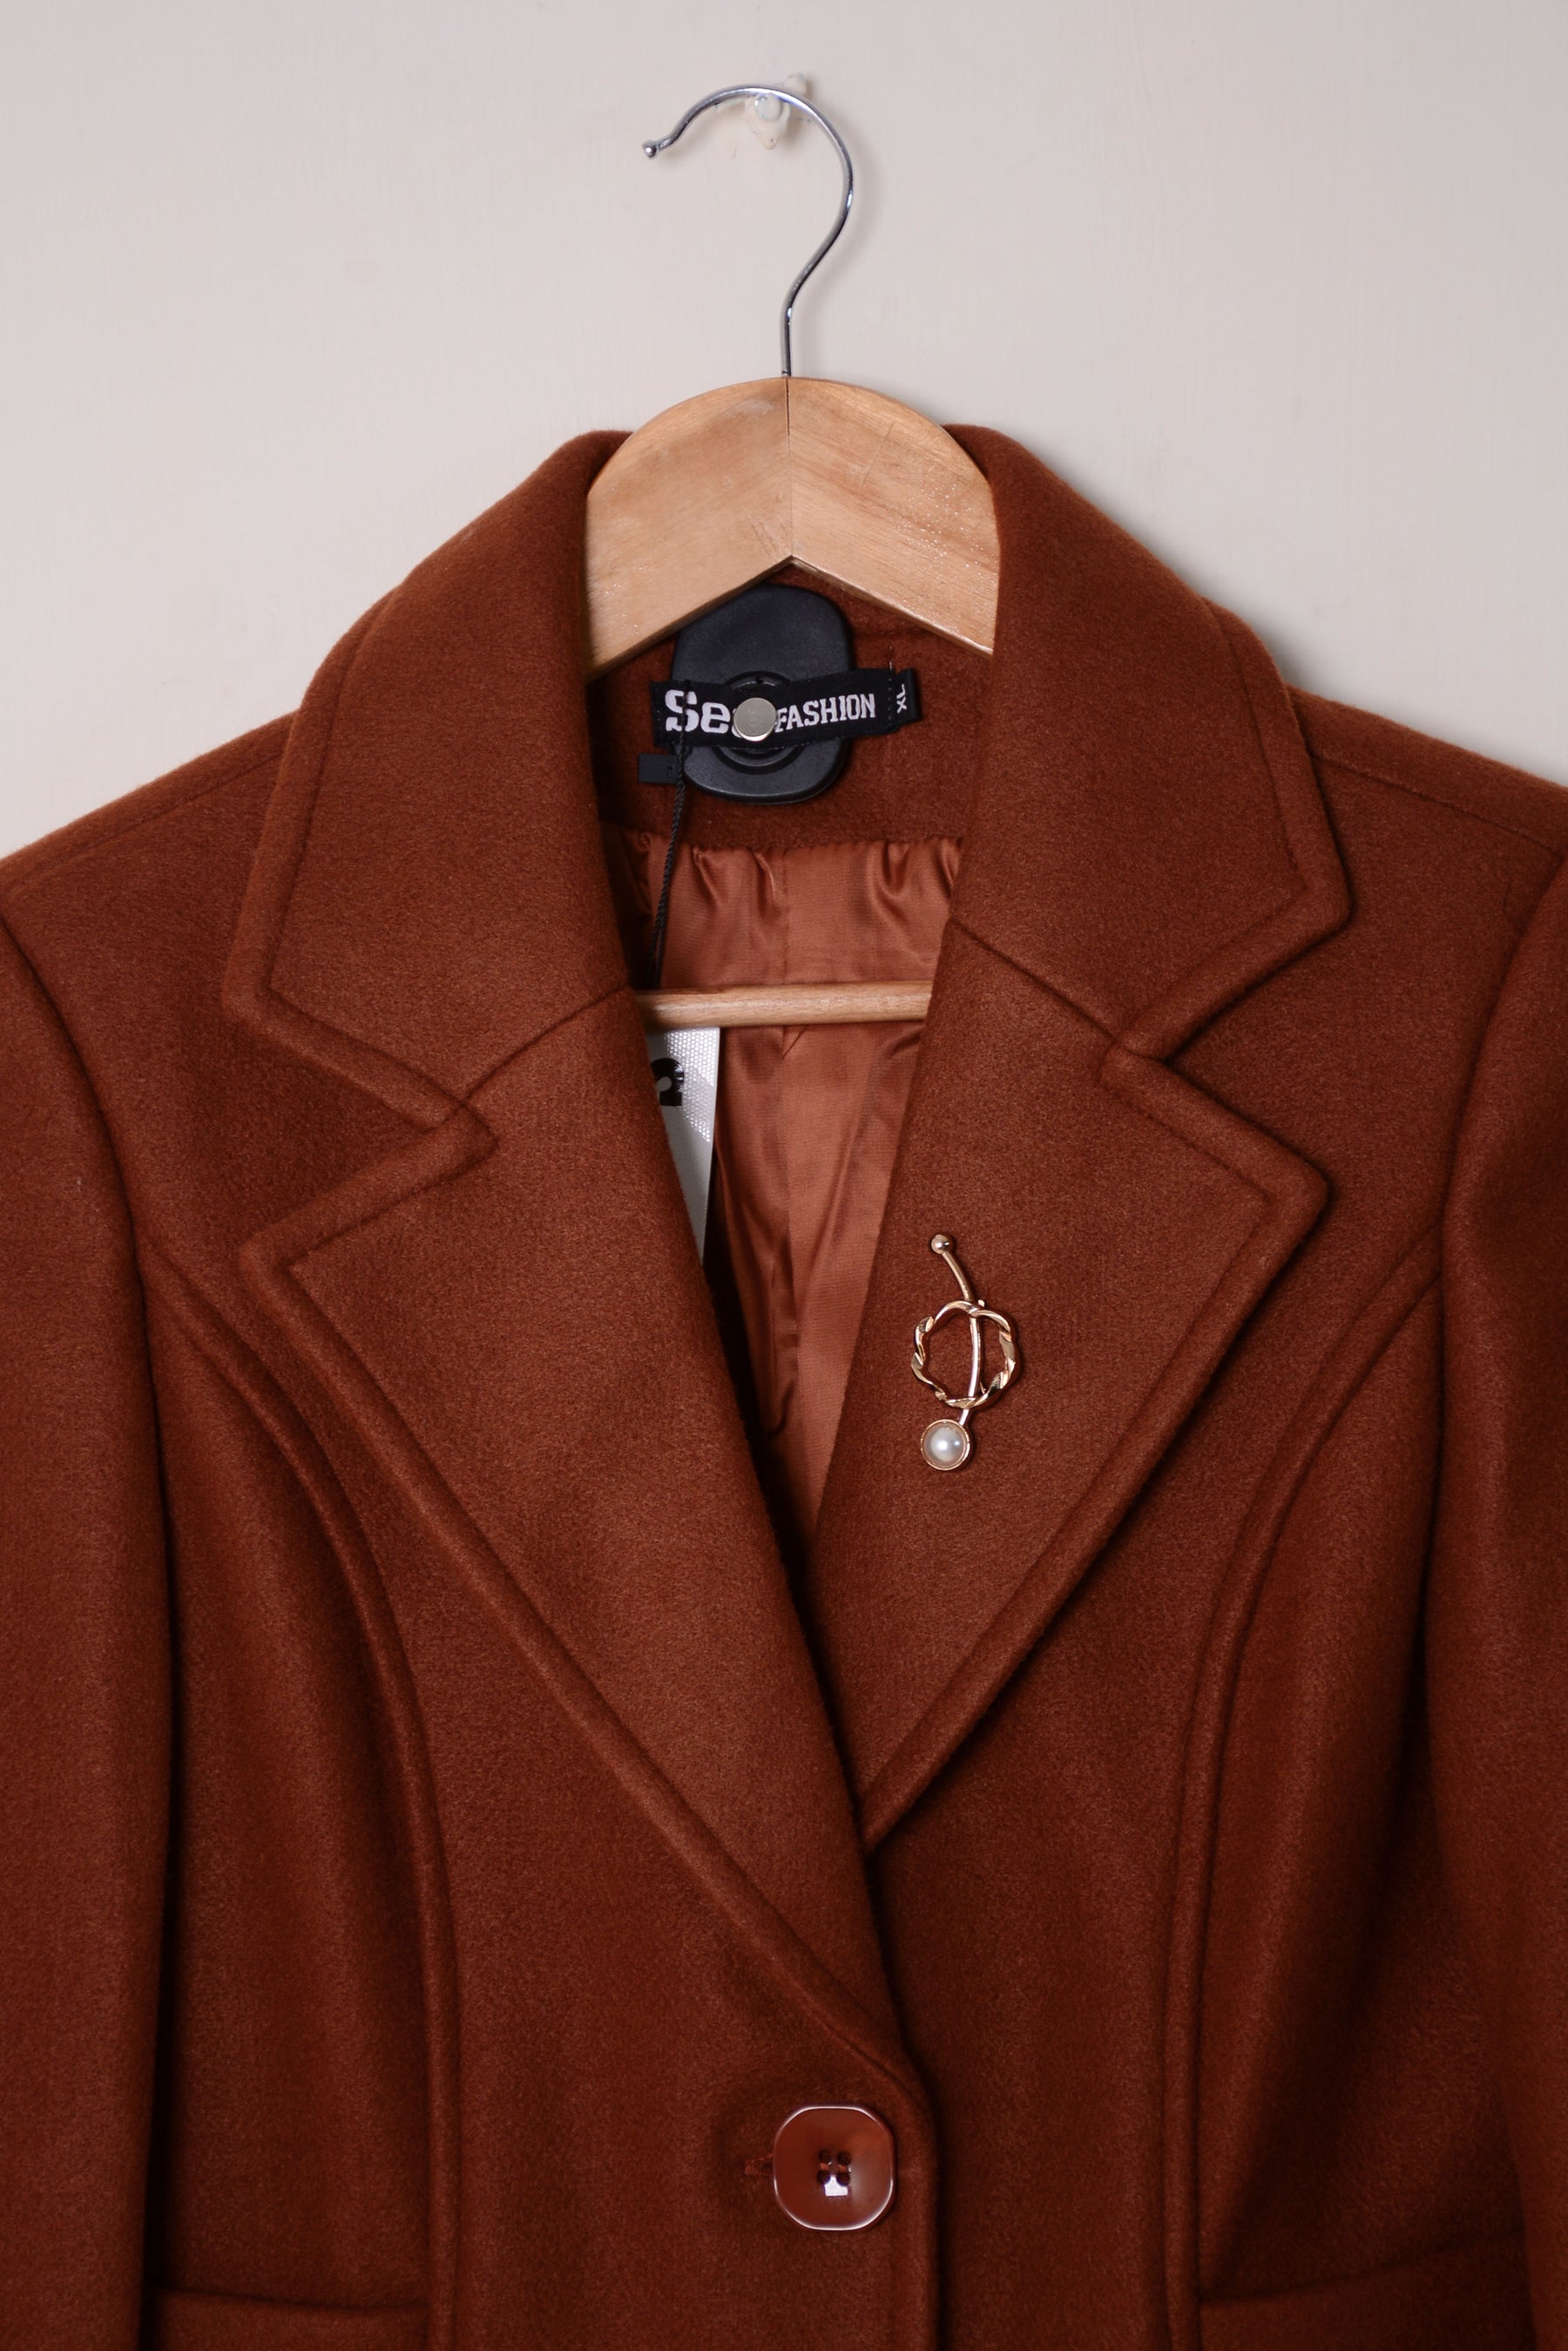 Ladies Winter Long Coats YKN-460 Brown